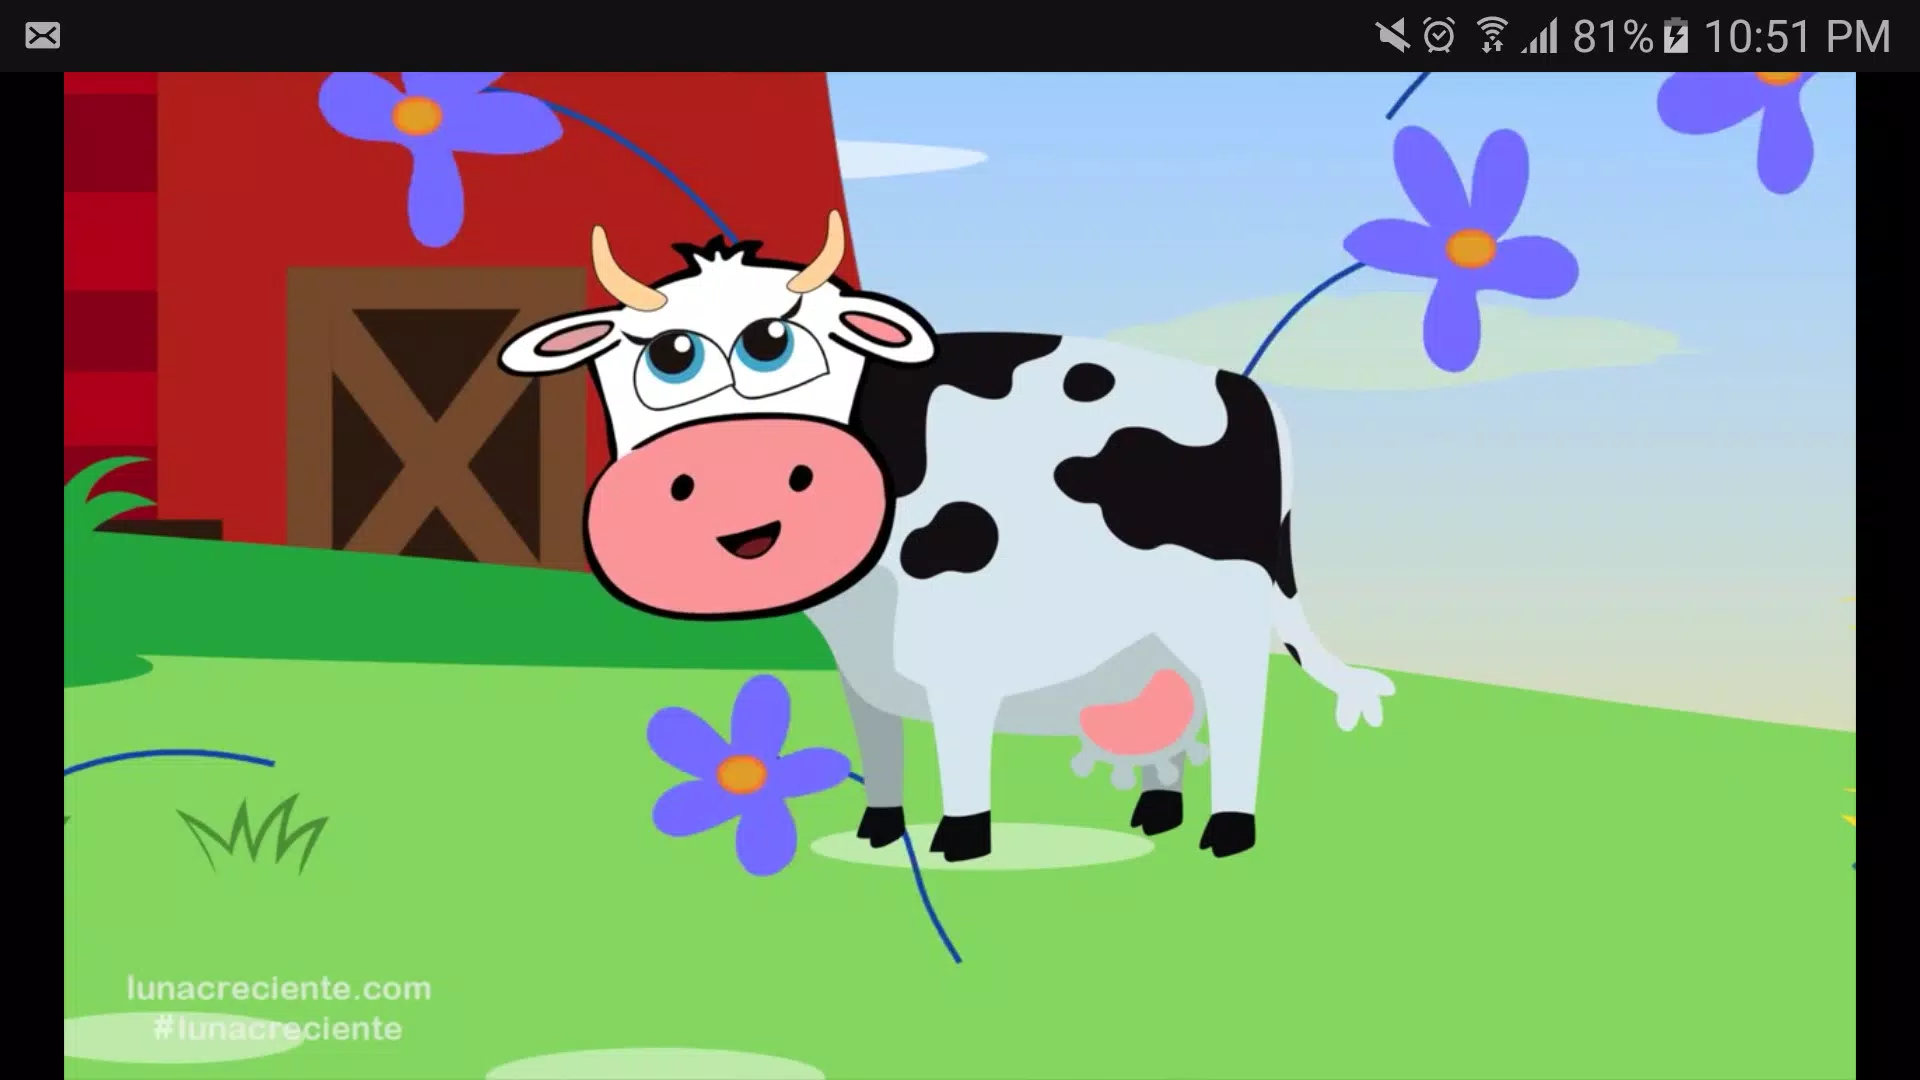 Videos de la Vaca Lola Gratis